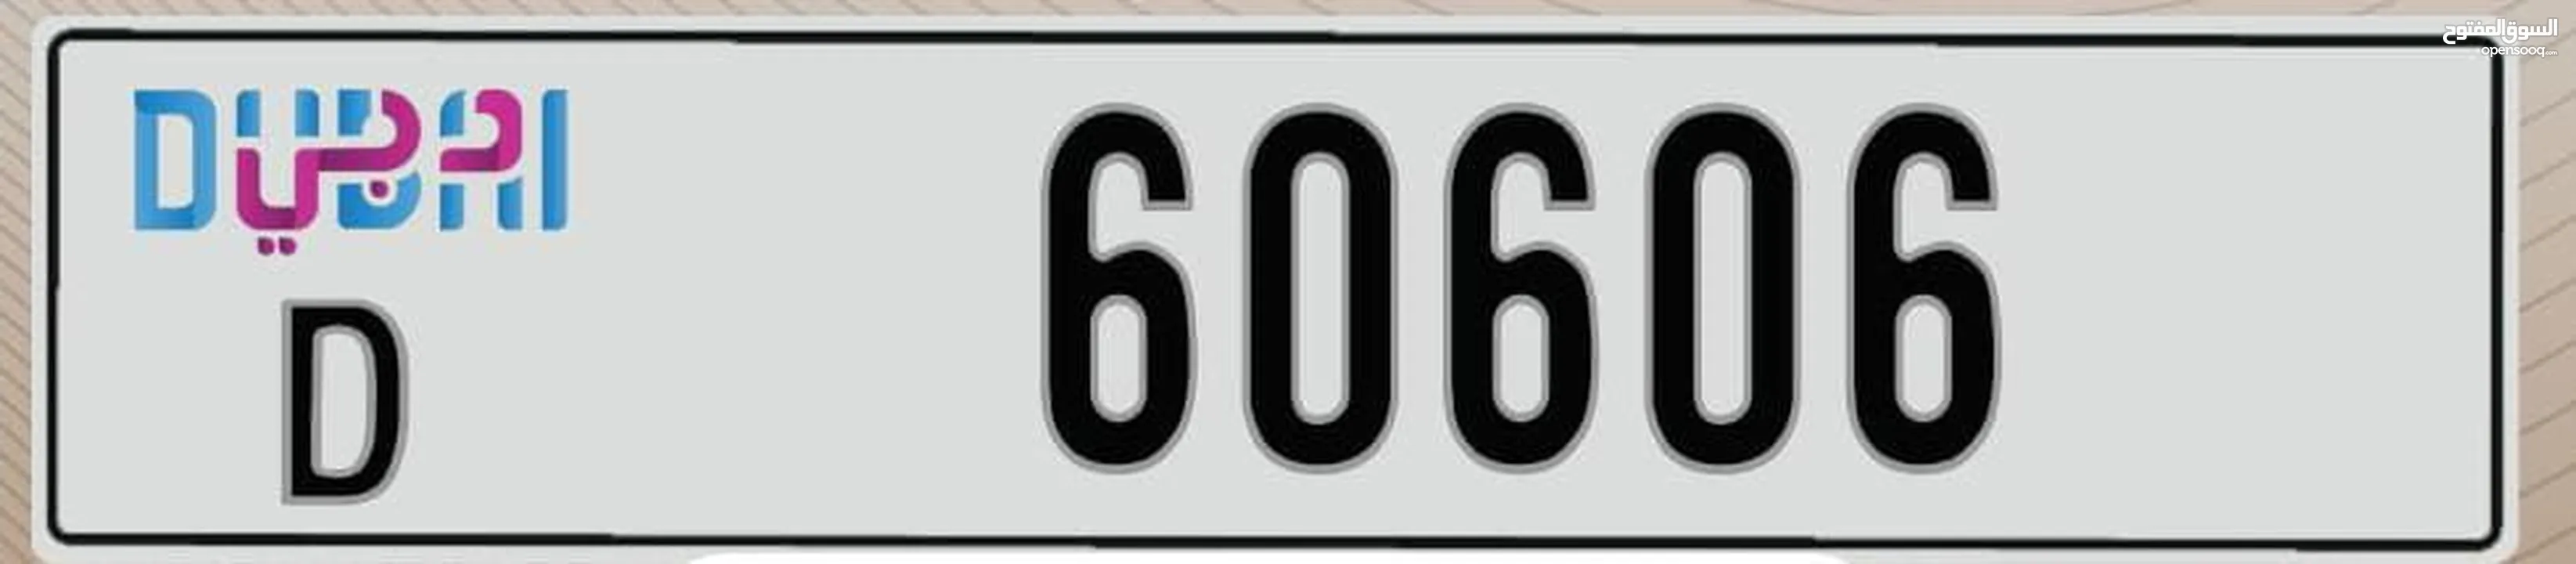 رقم مميز  تمييز  60606 دبي  كود   D